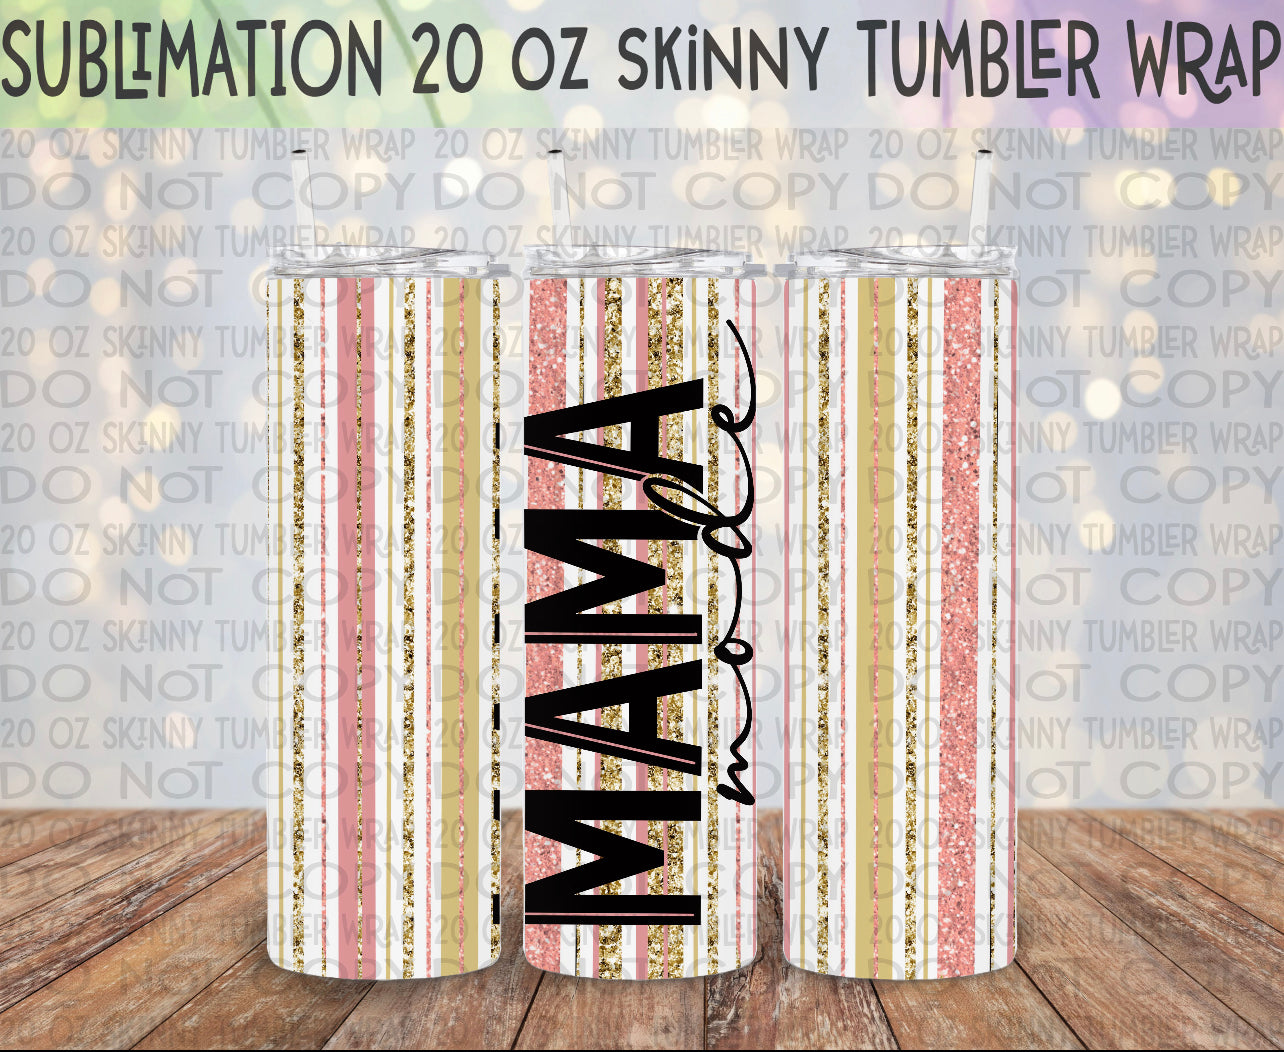 Mama Mode 20 Oz Skinny Tumbler Wrap - Sublimation Transfer - RTS